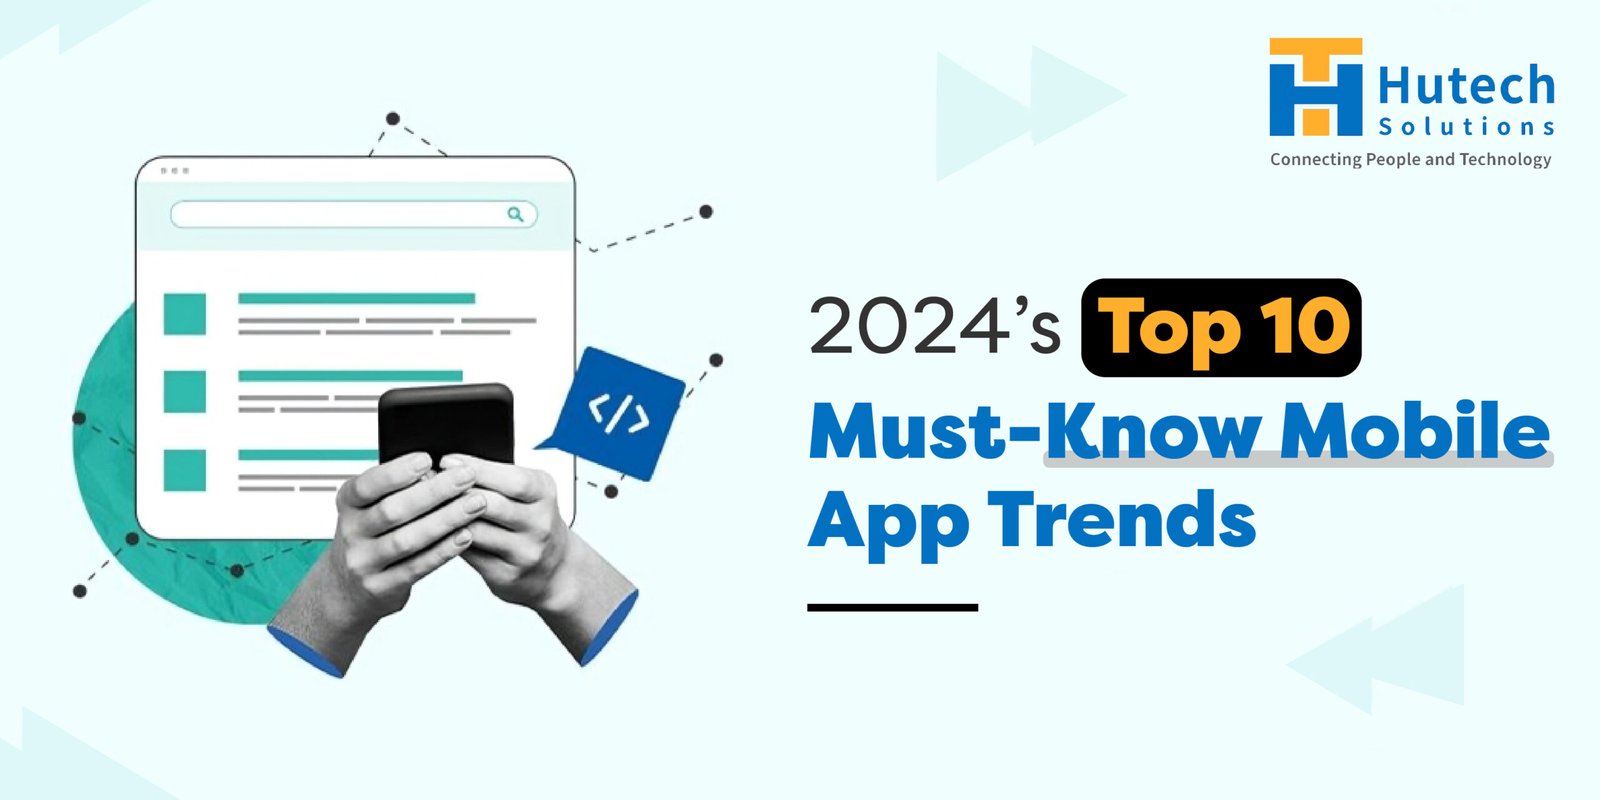 Top 10 Mobile App Trends In 2024